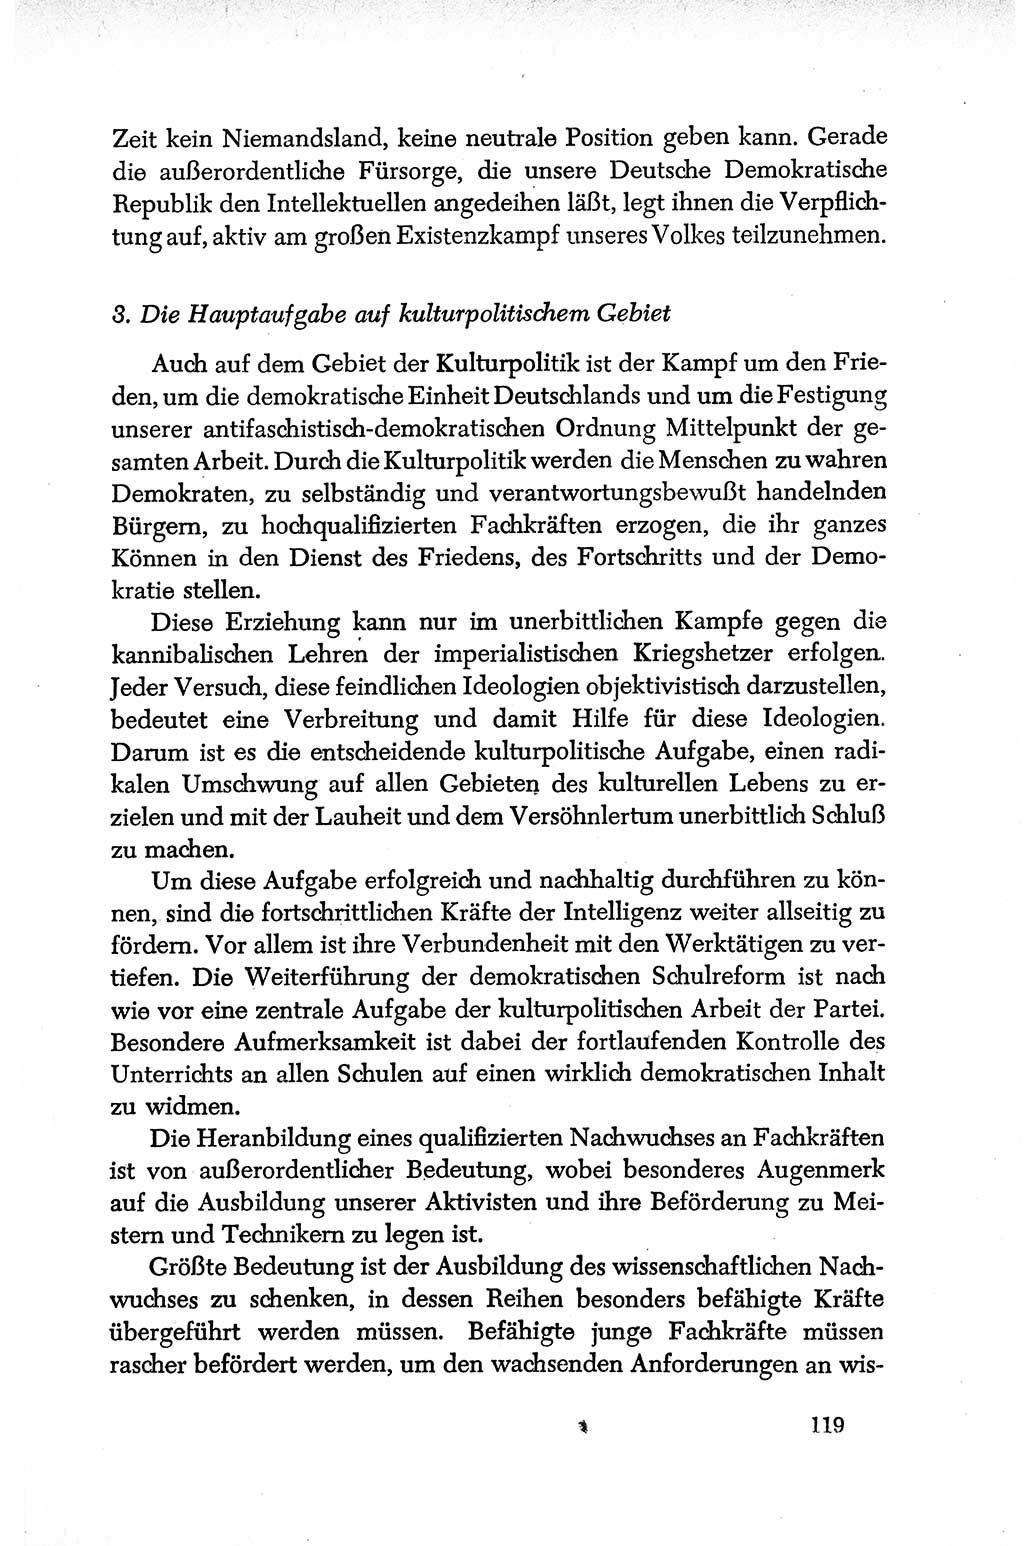 Dokumente der Sozialistischen Einheitspartei Deutschlands (SED) [Deutsche Demokratische Republik (DDR)] 1950-1952, Seite 119 (Dok. SED DDR 1950-1952, S. 119)